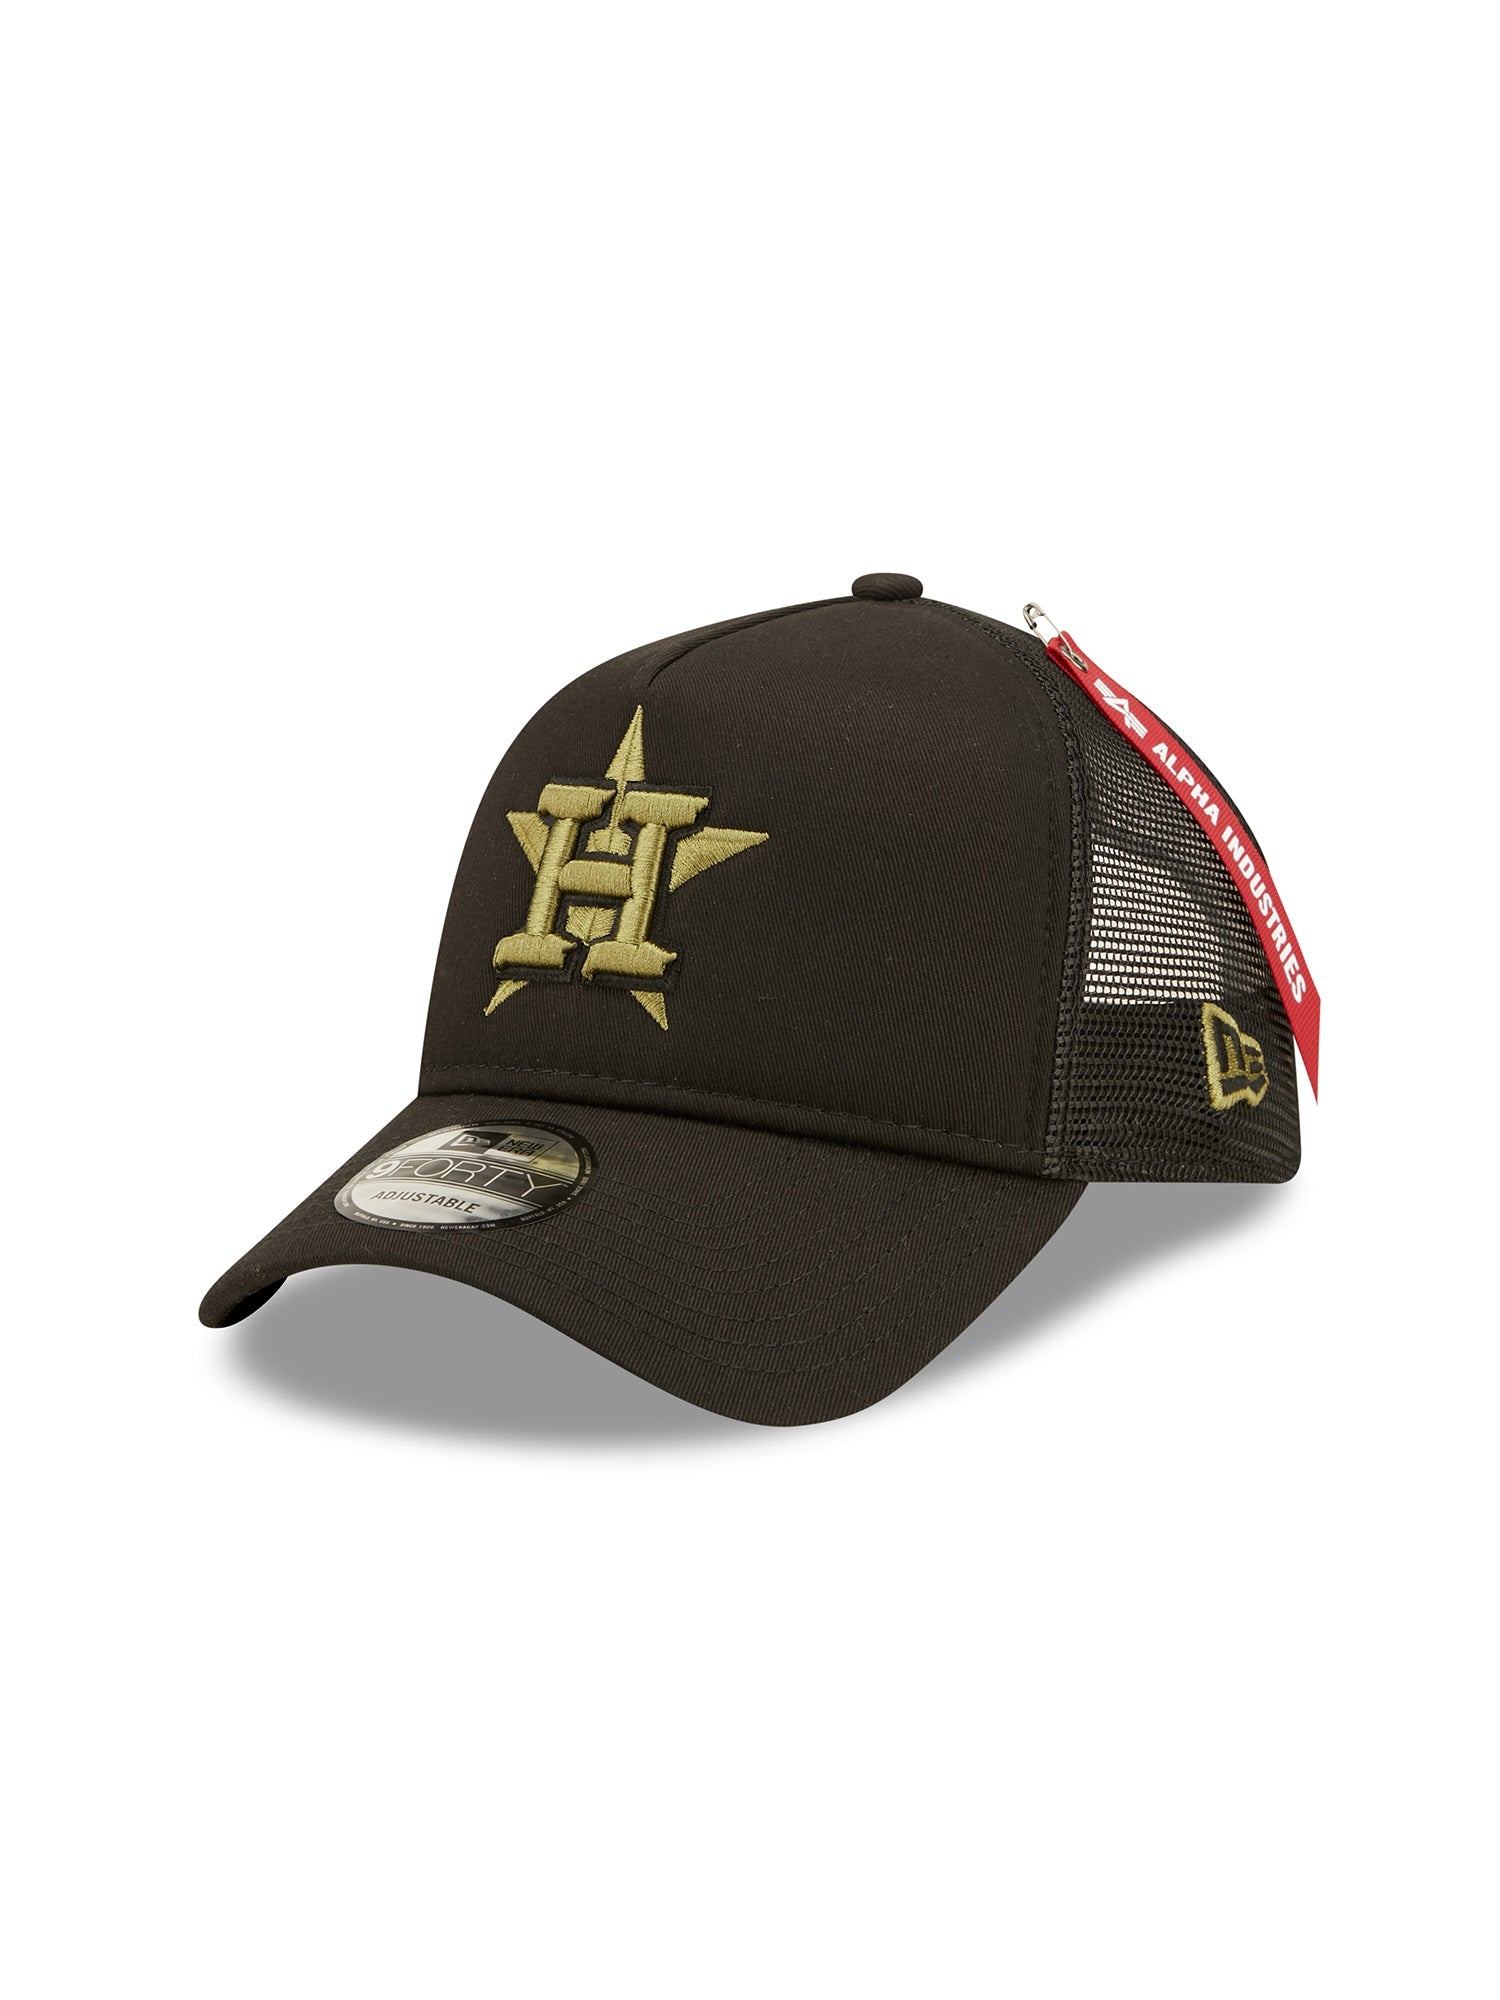 Houston Astros 940 Hat